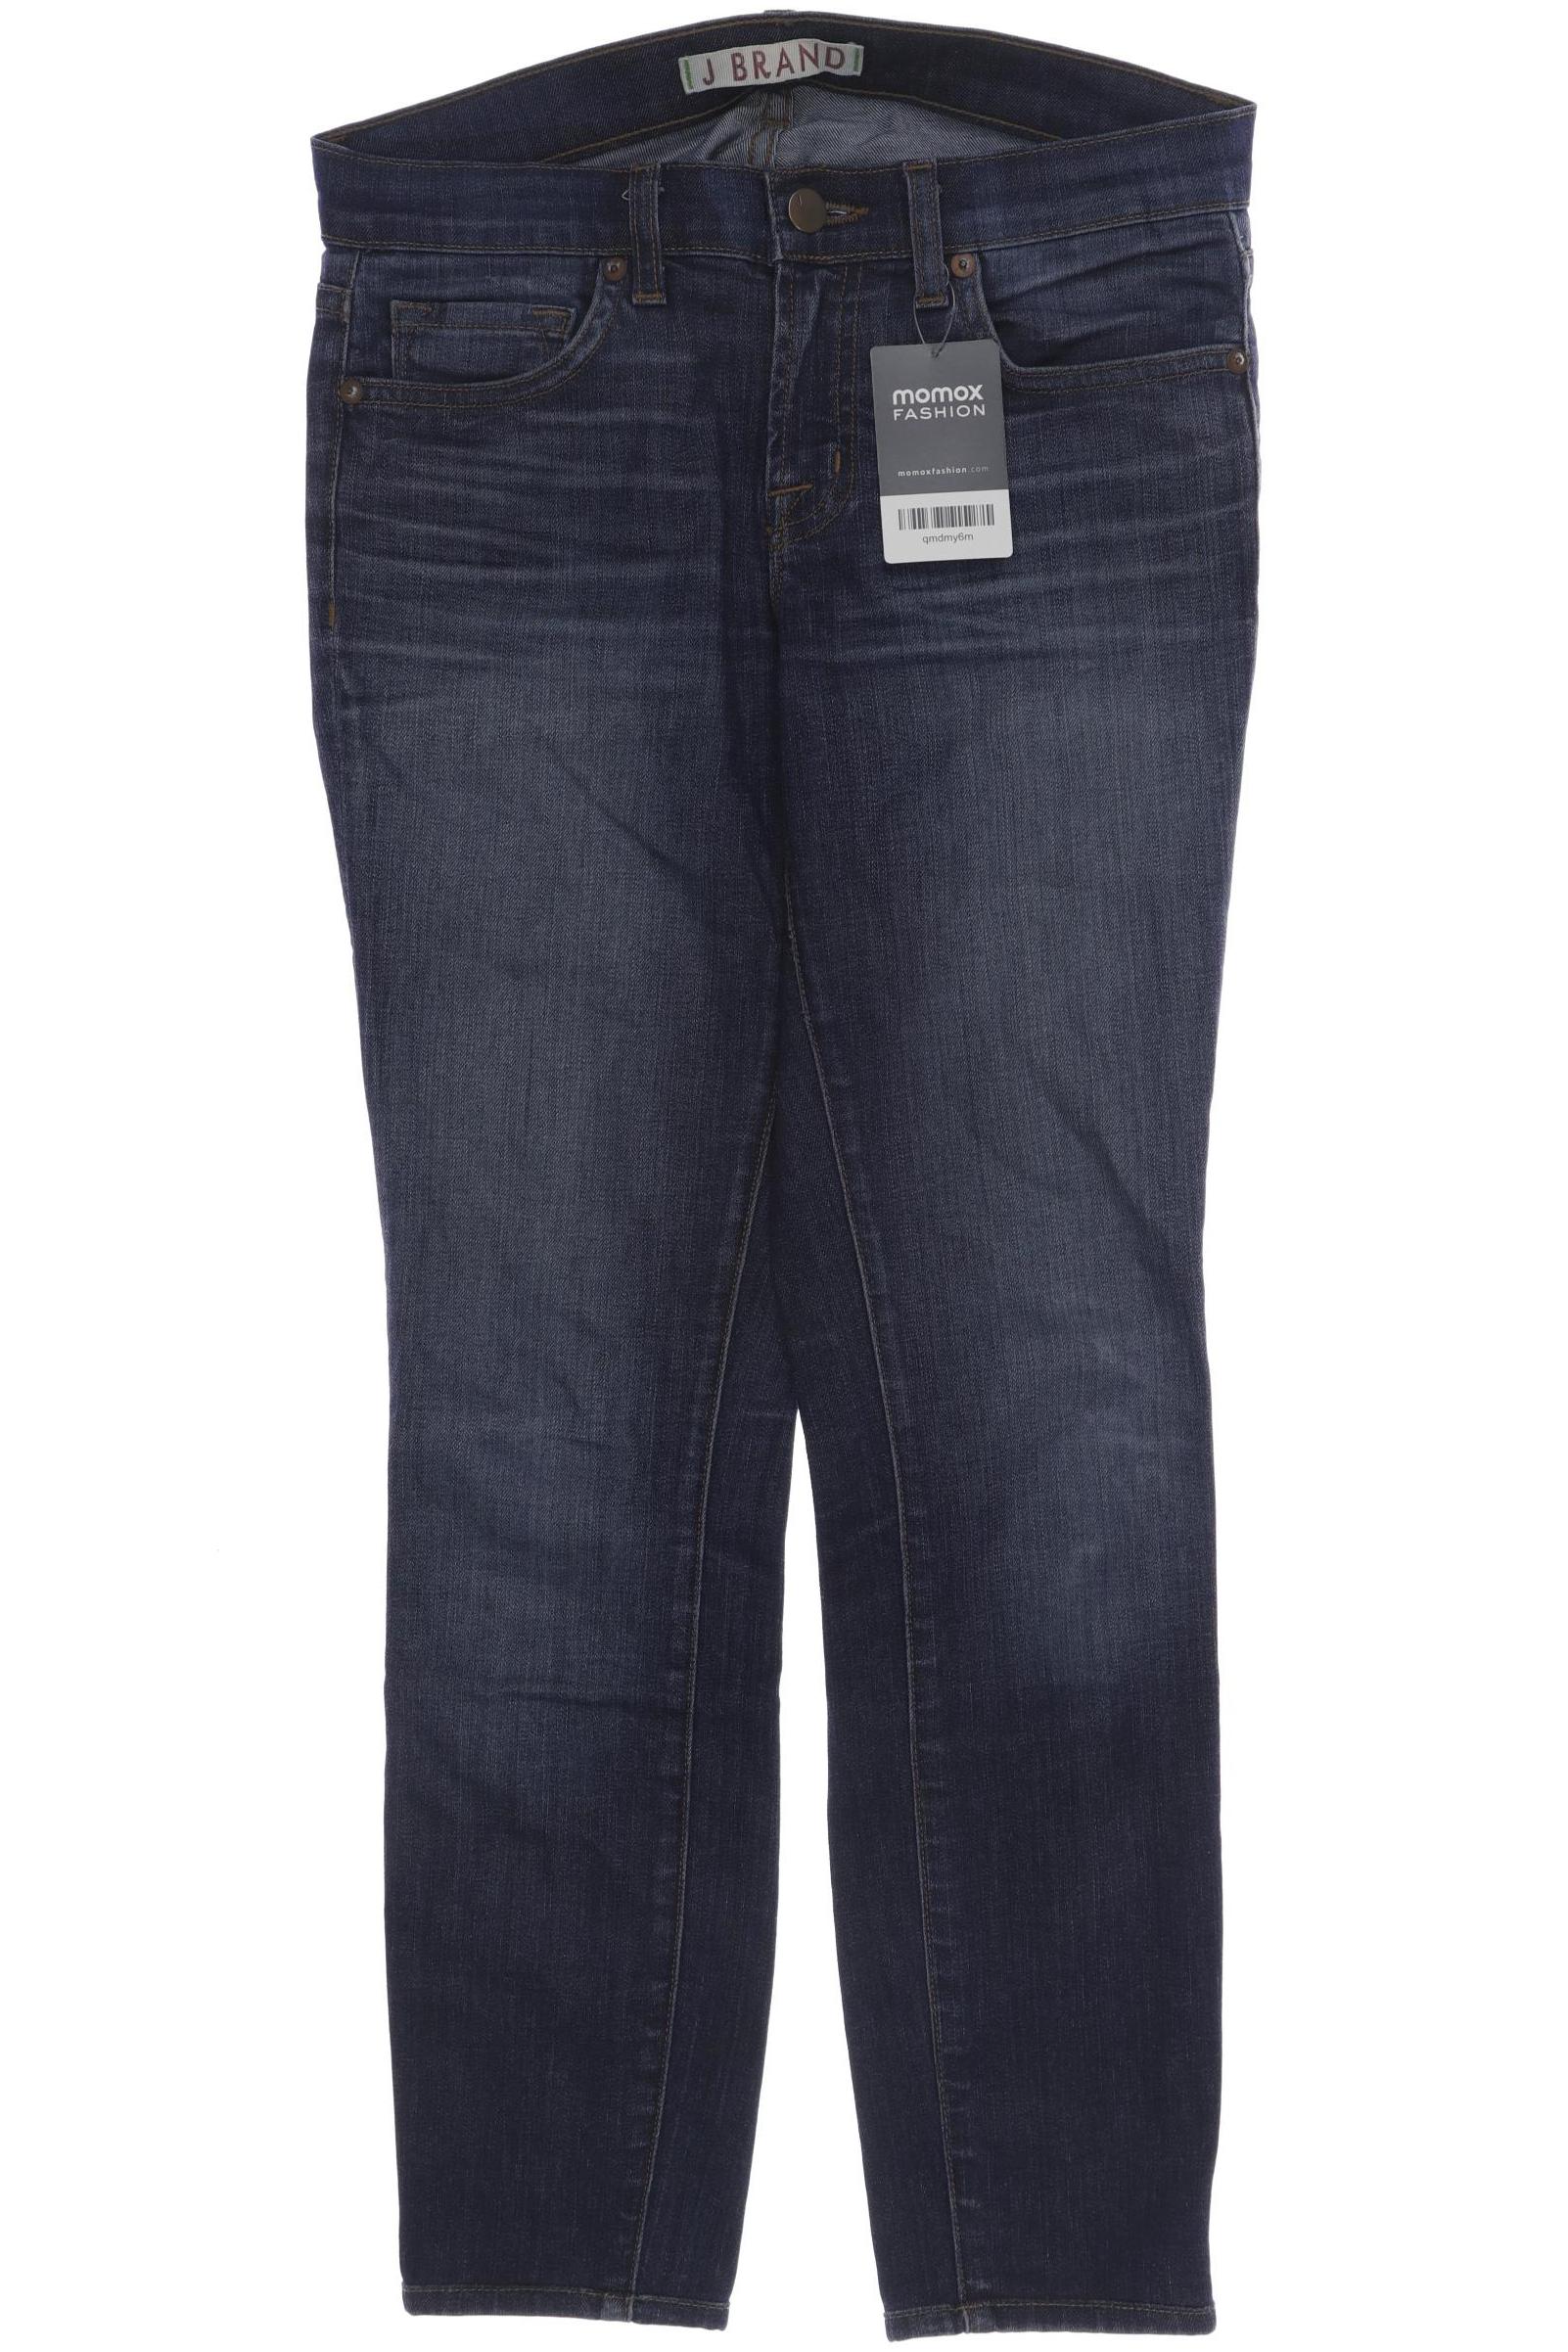 J Brand Damen Jeans, marineblau, Gr. 36 von J Brand